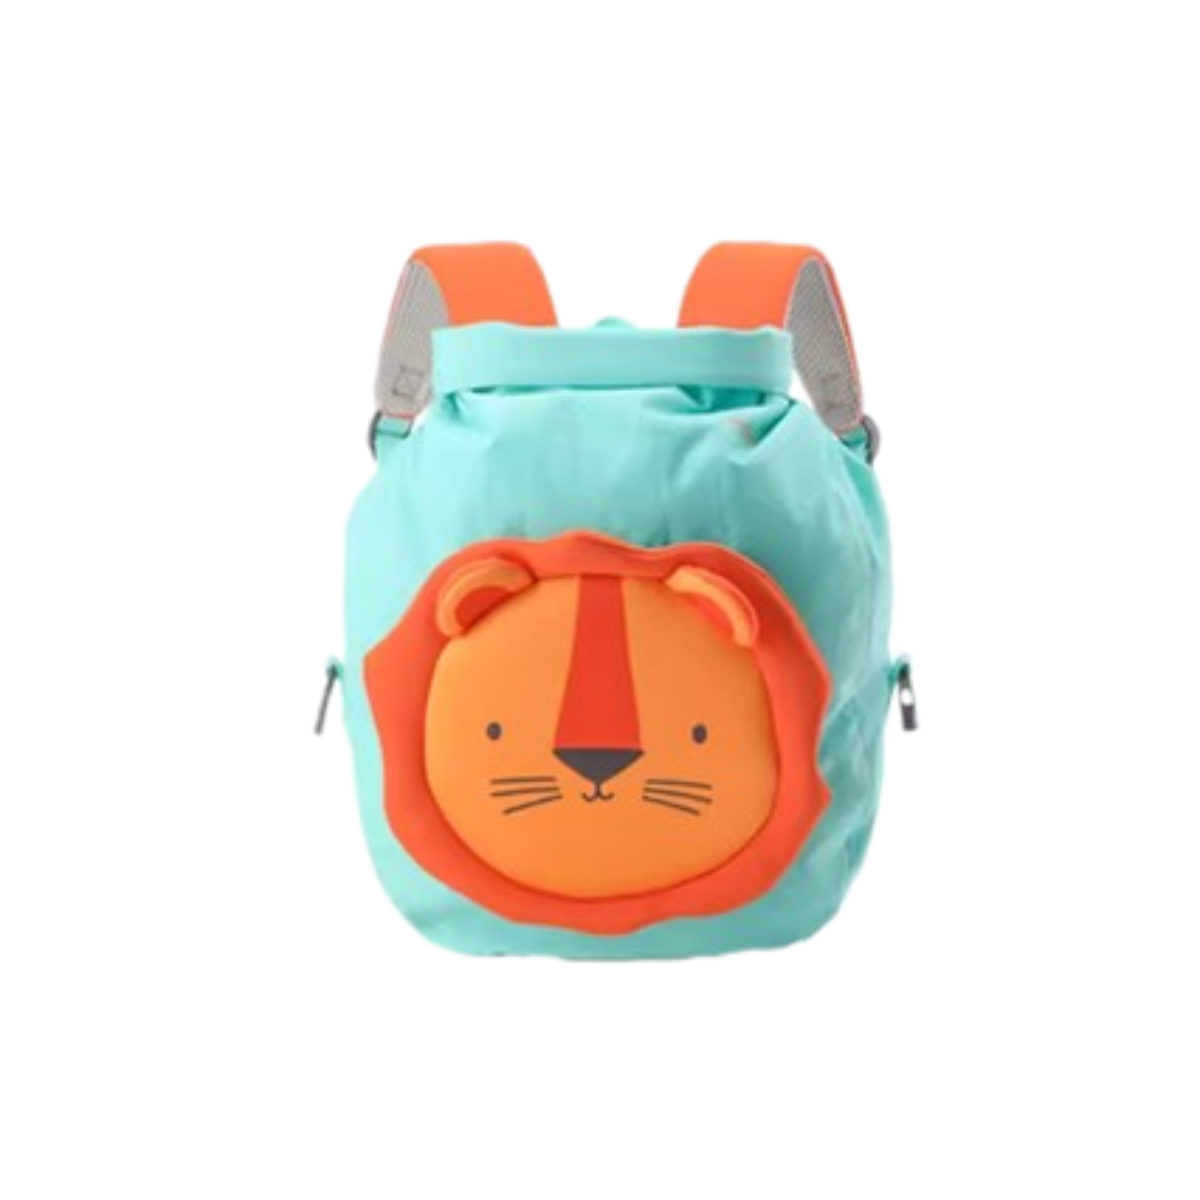 กระเป๋าว่ายน้ำเด็ก สิงโต สีเขียว/ส้ม